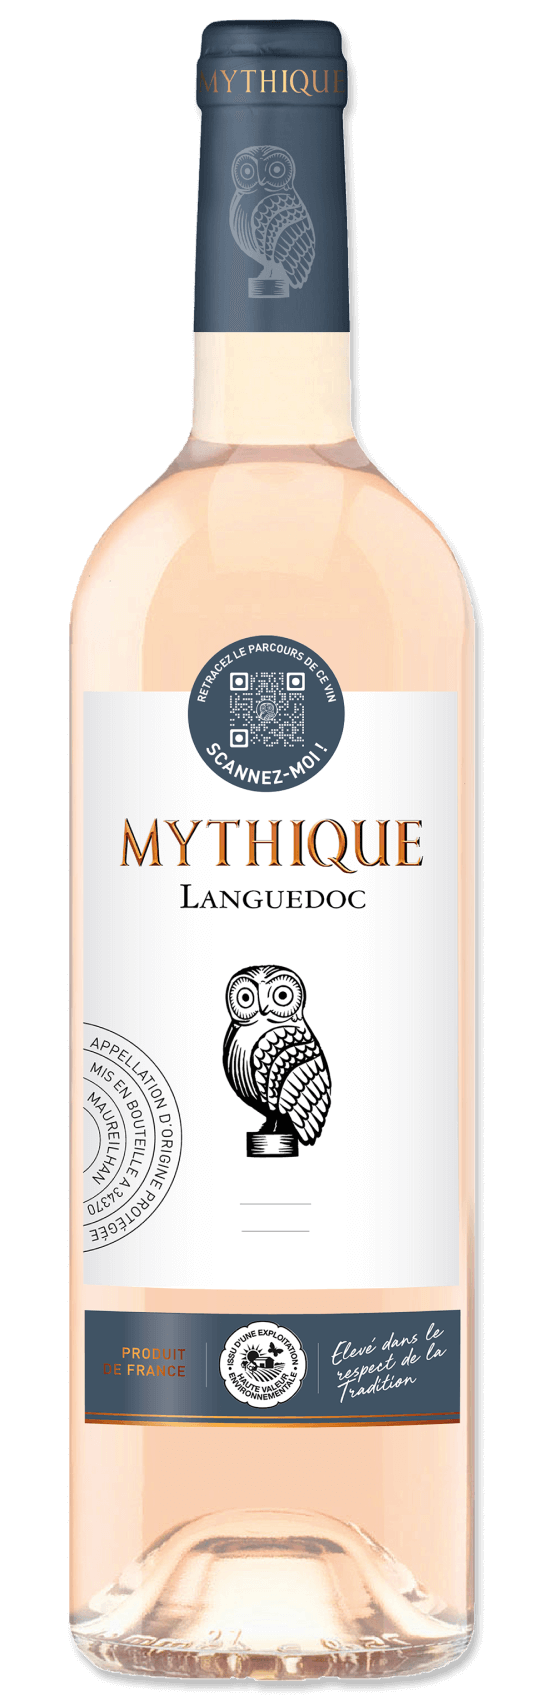 Mythique Languedoc - Mythique